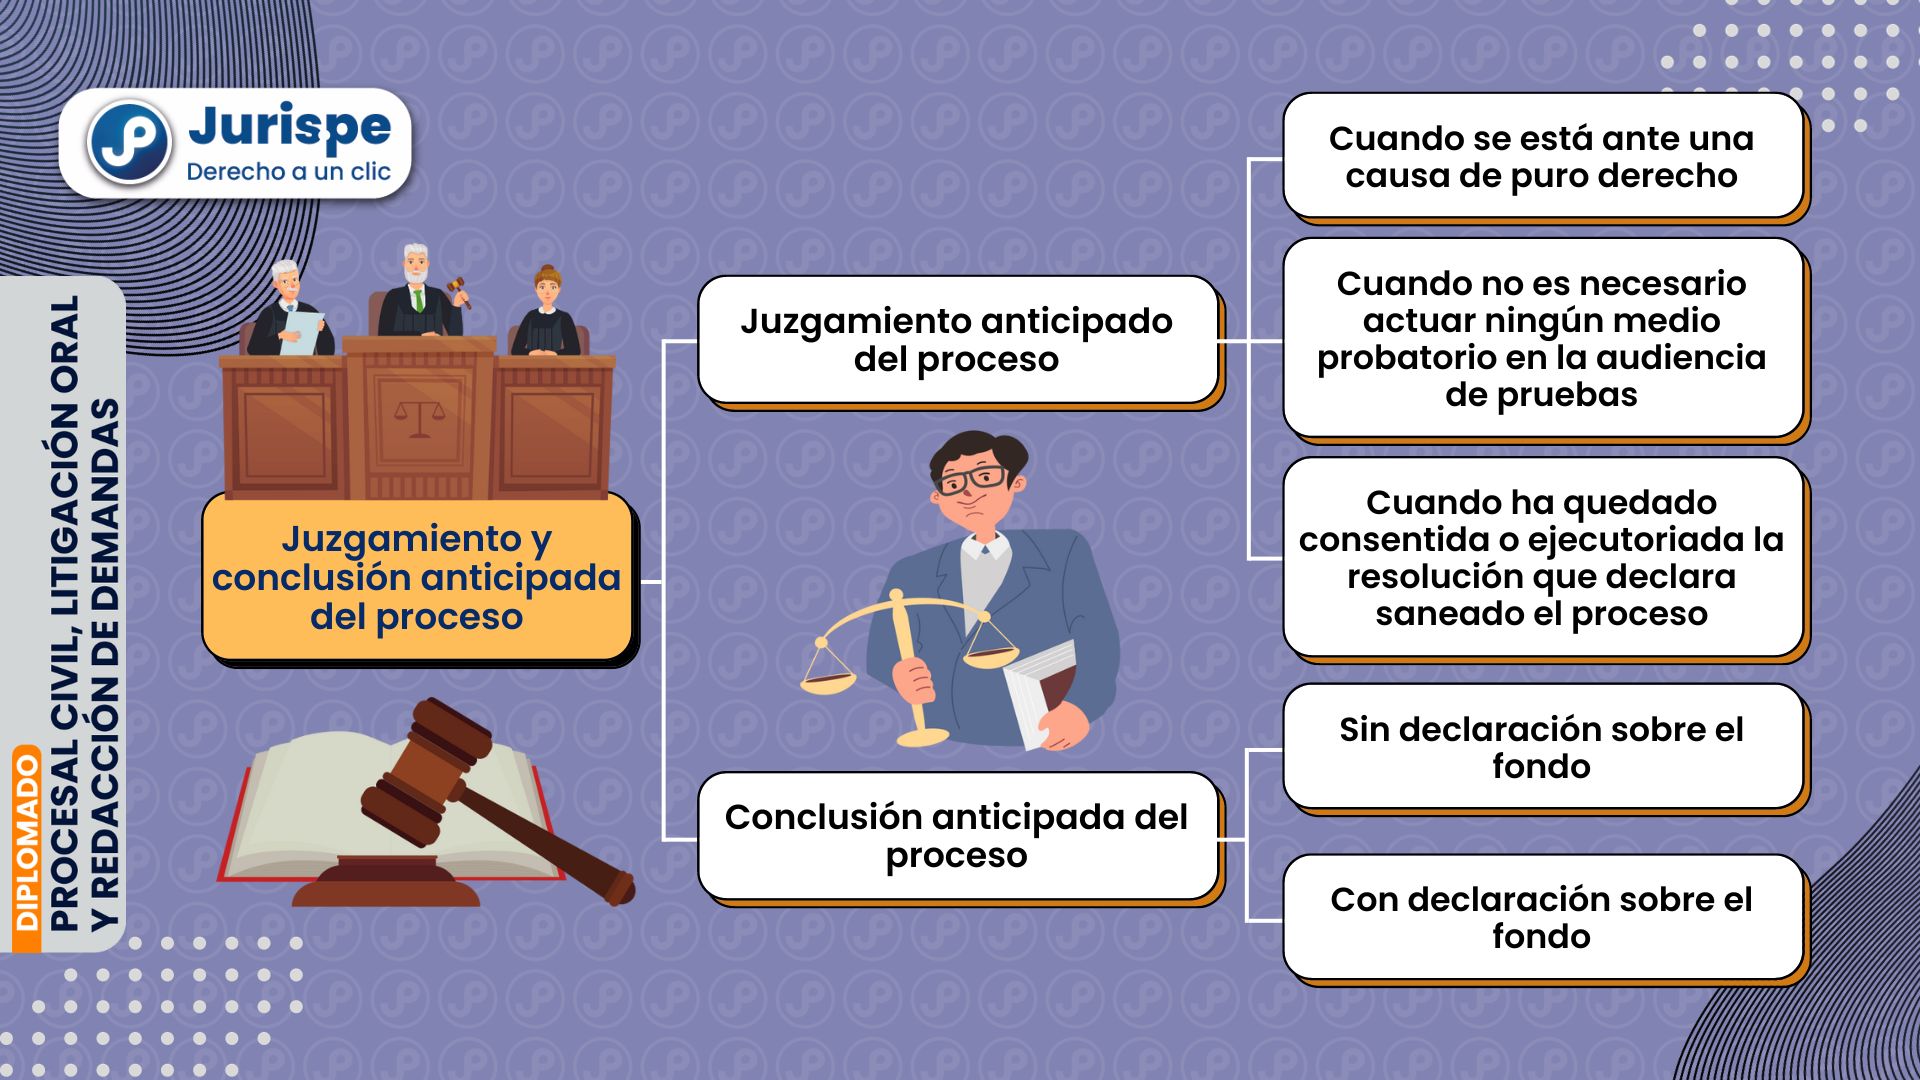 Juzgamiento y conclusión anticipada del proceso civil peruano. Bien explicado